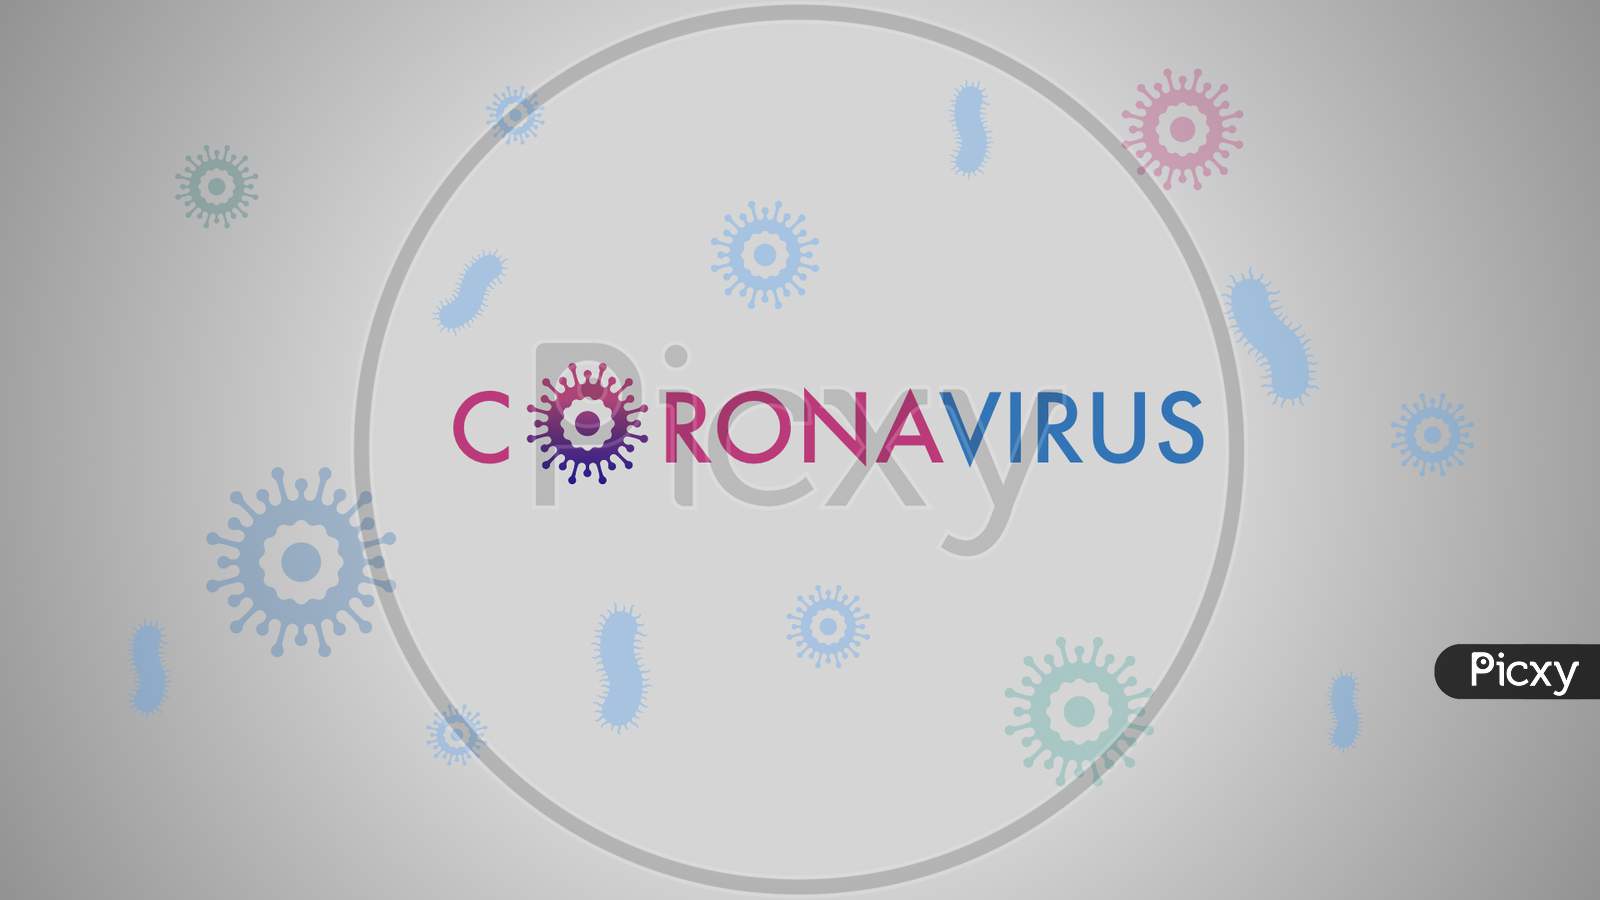 Corona Virus Banner For Awareness & Alert Against Disease Spread